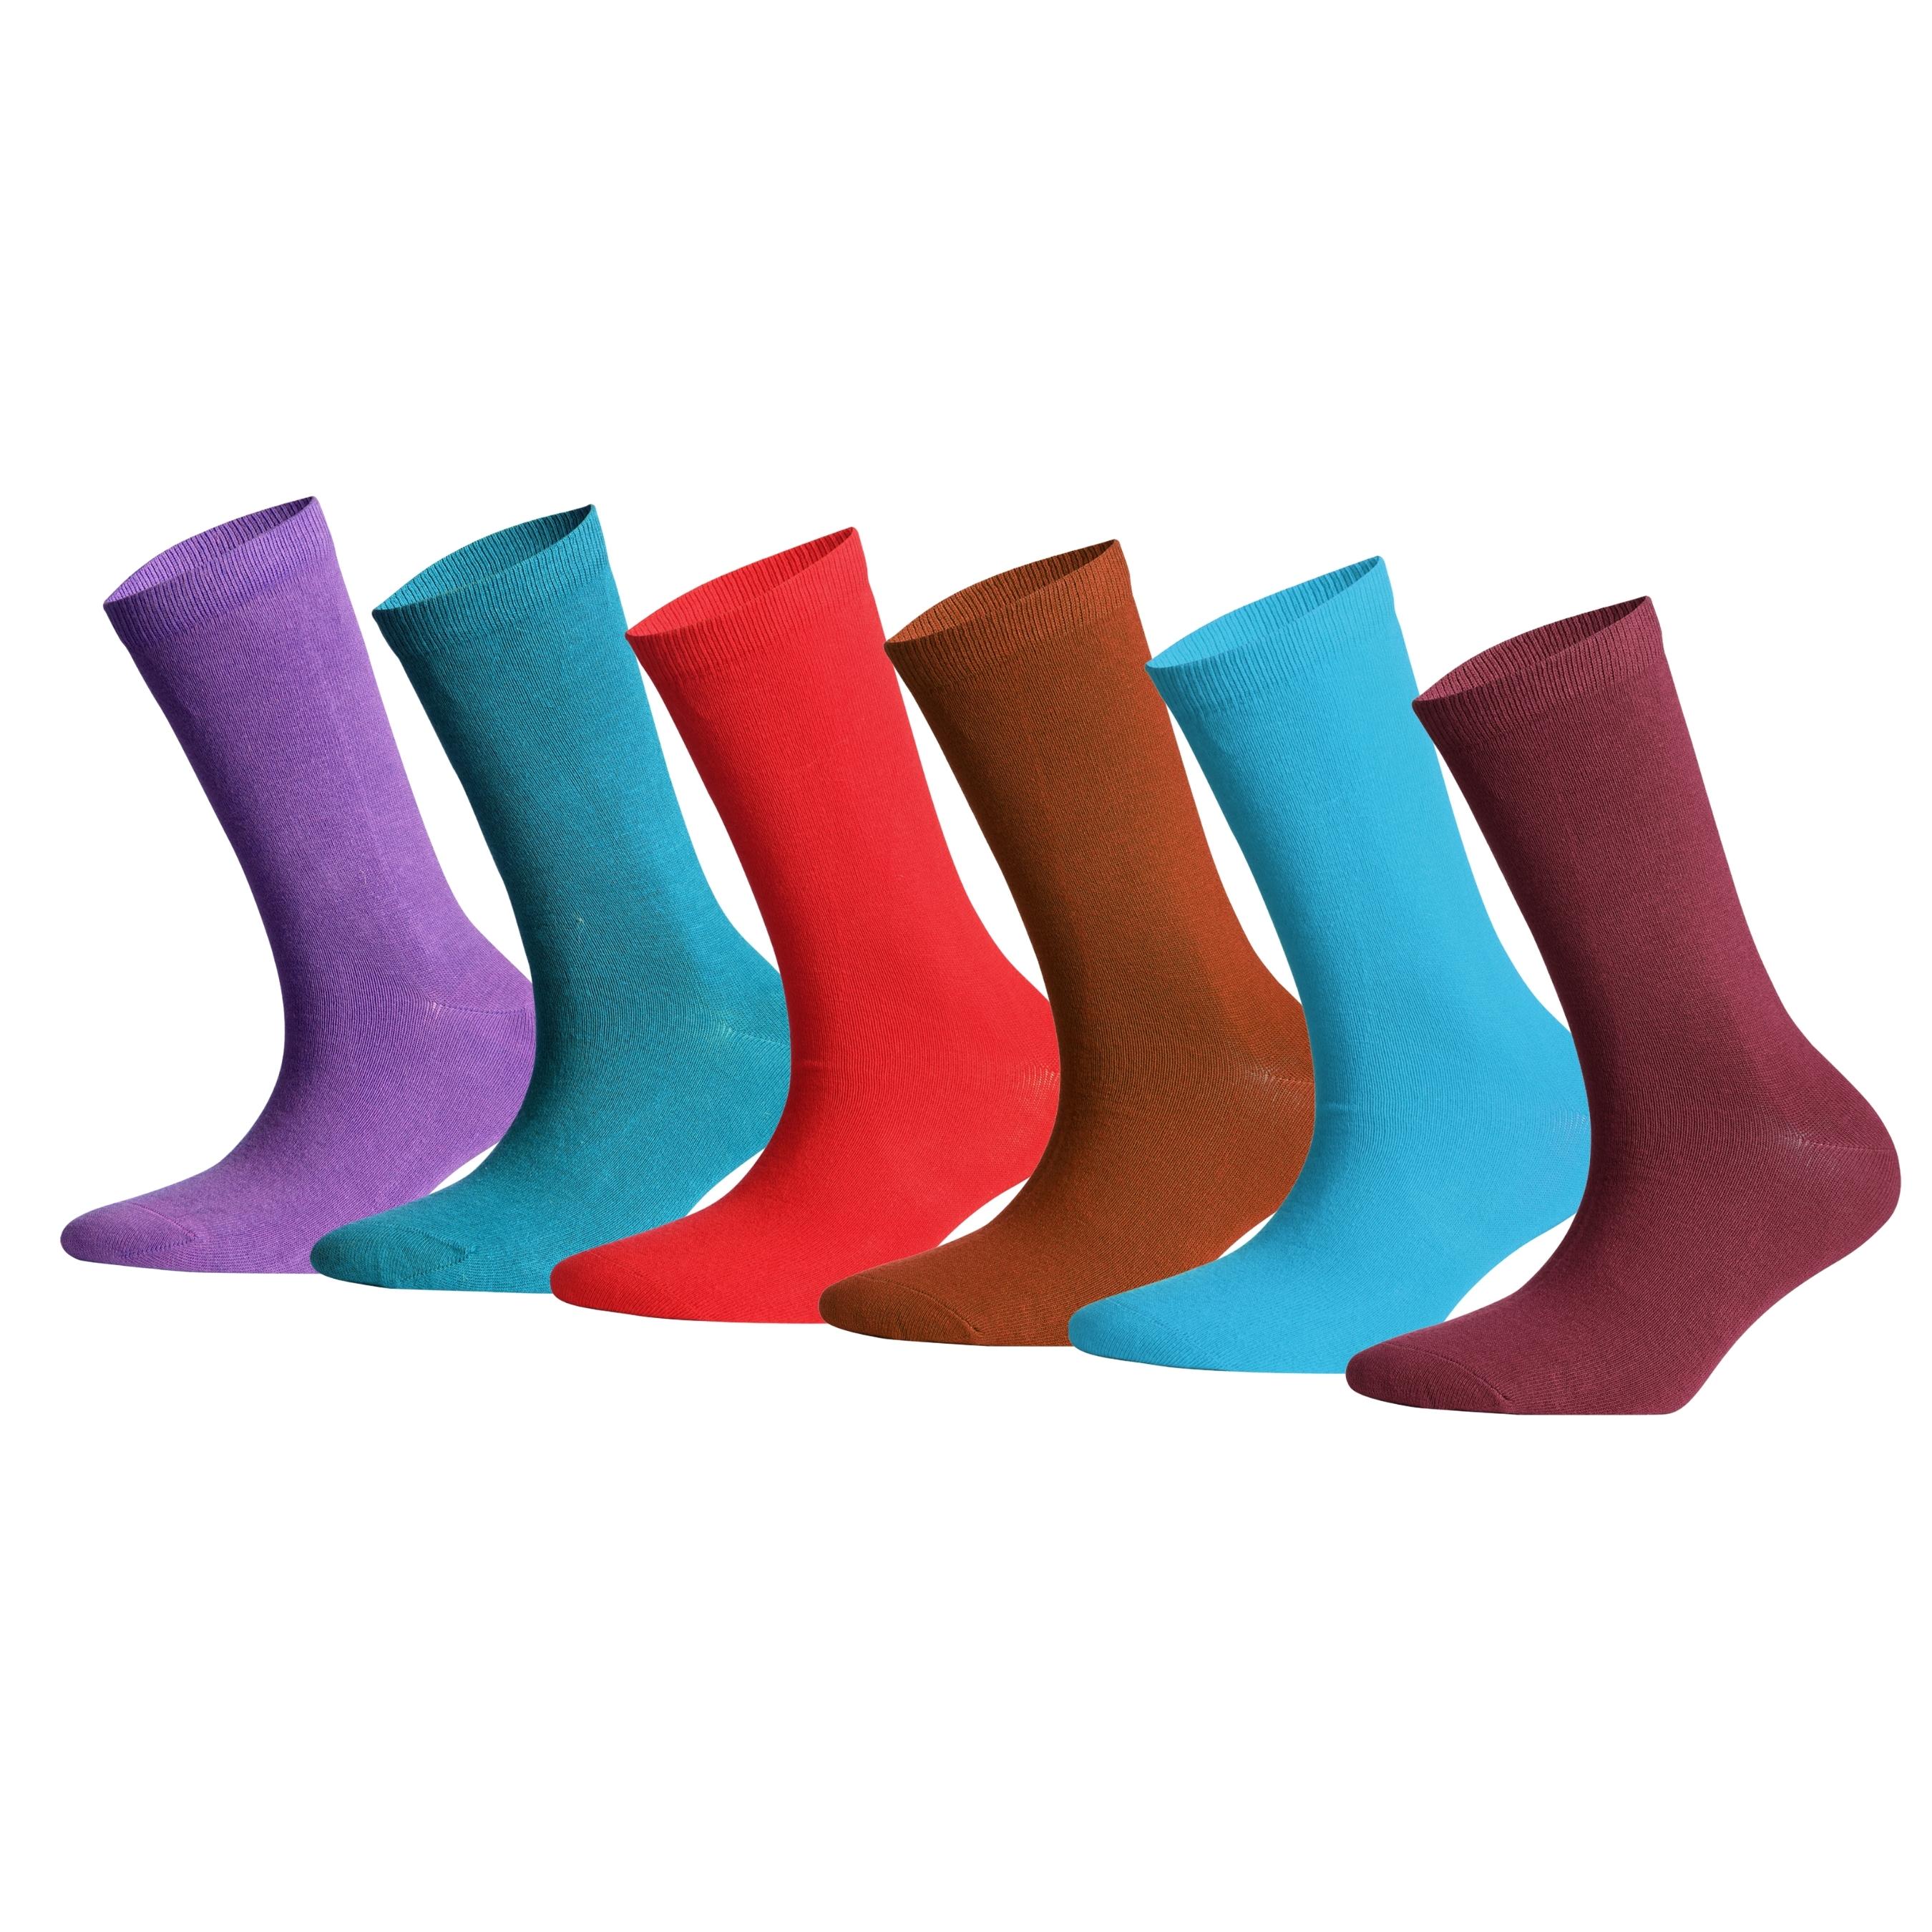 Koyu Pastel Pamuklu Renkli Çorap Kutusu 6'lı Dikişsiz Neşeli Çoraplar